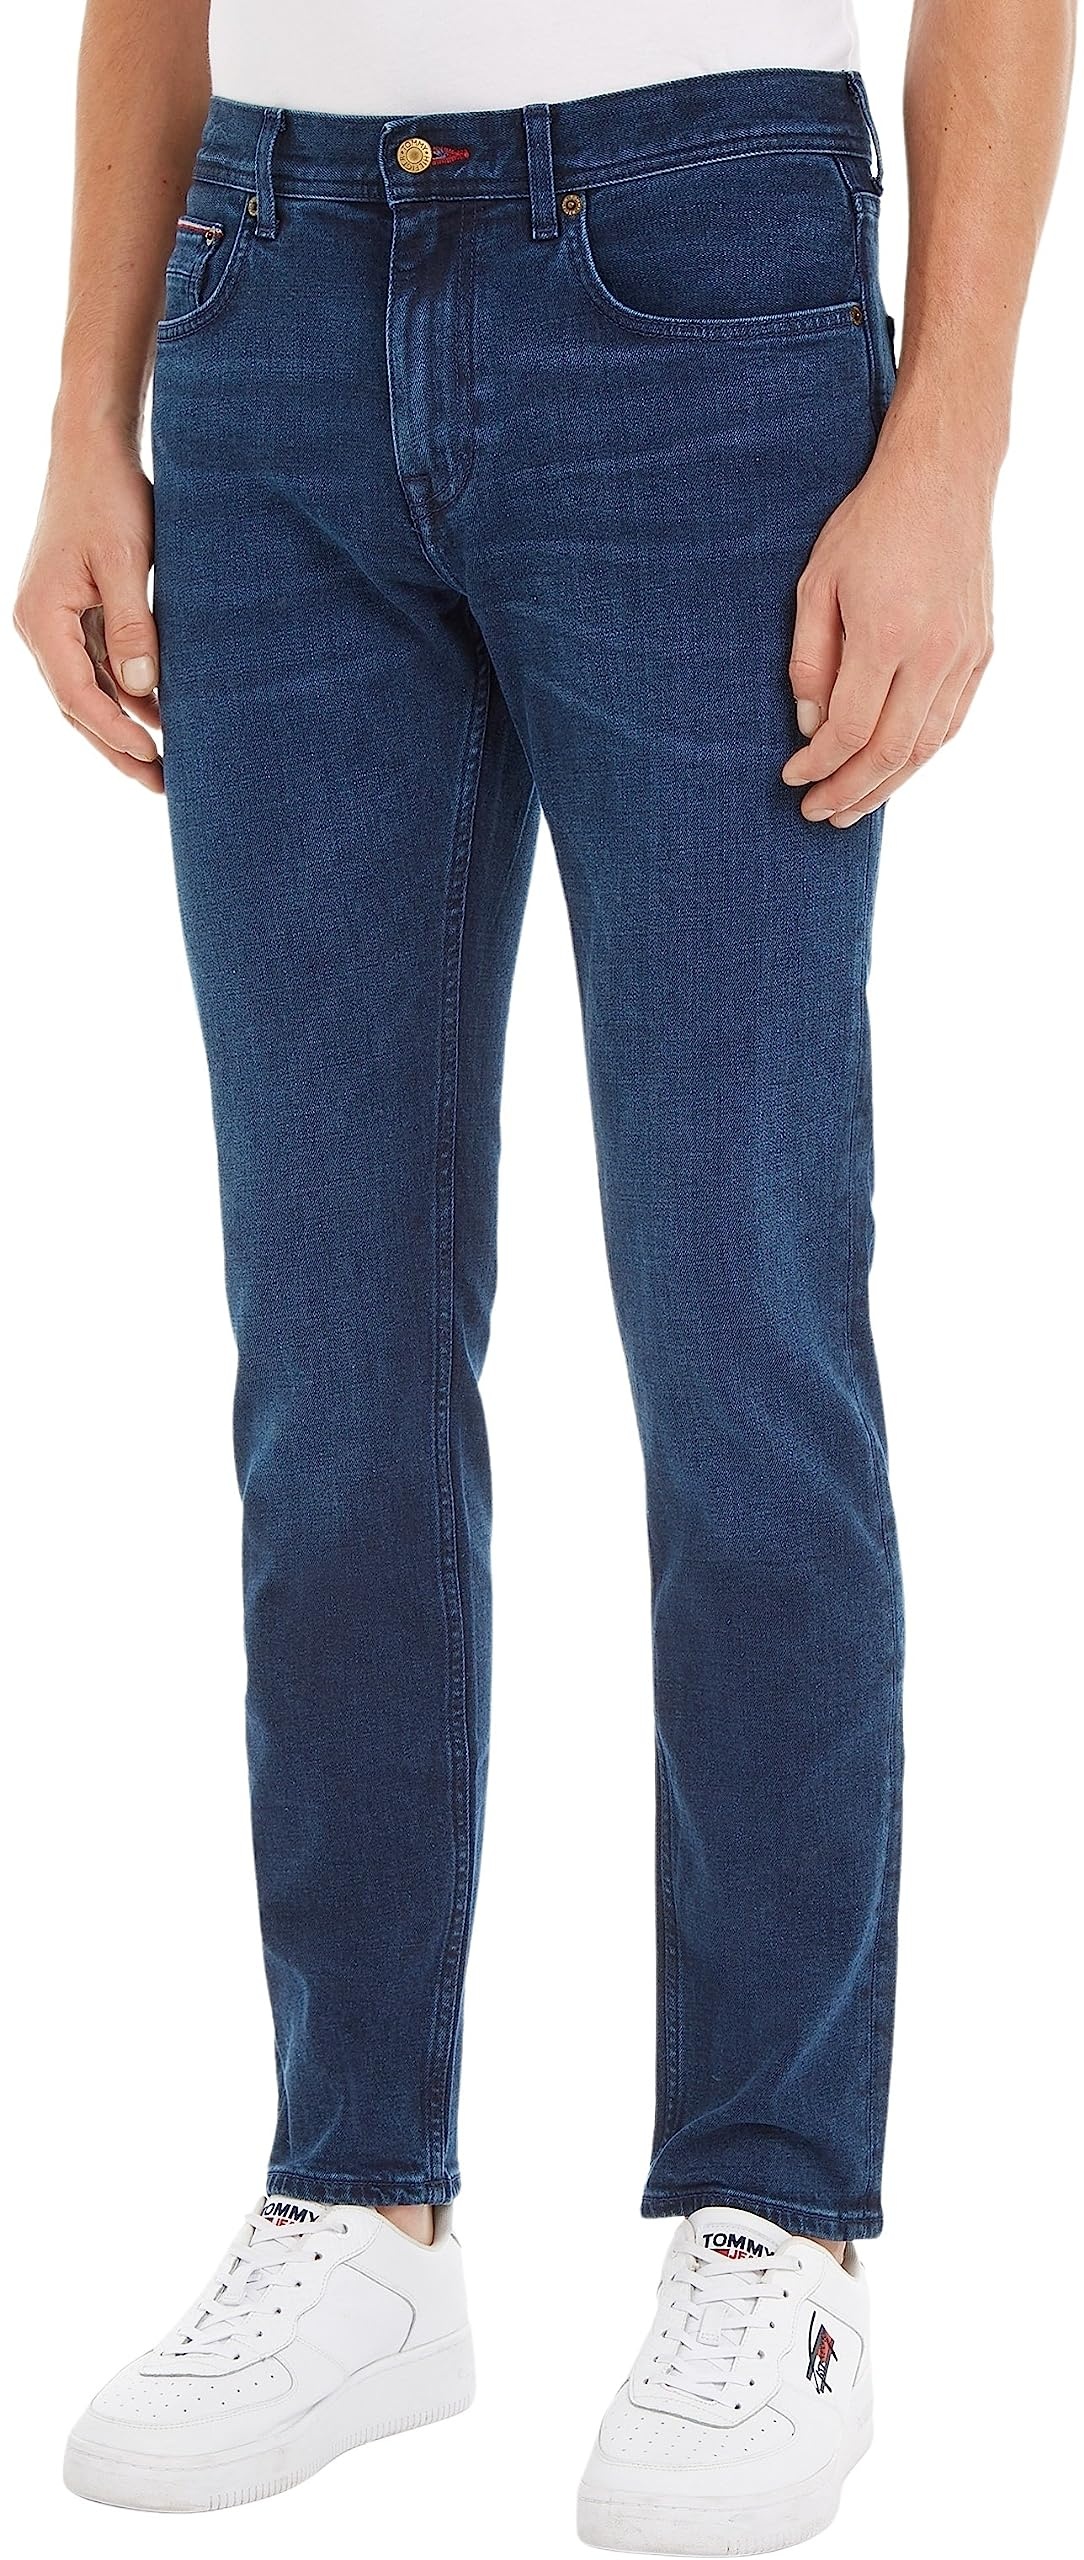 Tommy Hilfiger Herren Jeans Core Straight Denton Stretch, Blau (Bridger Indigo), 34W / 30L